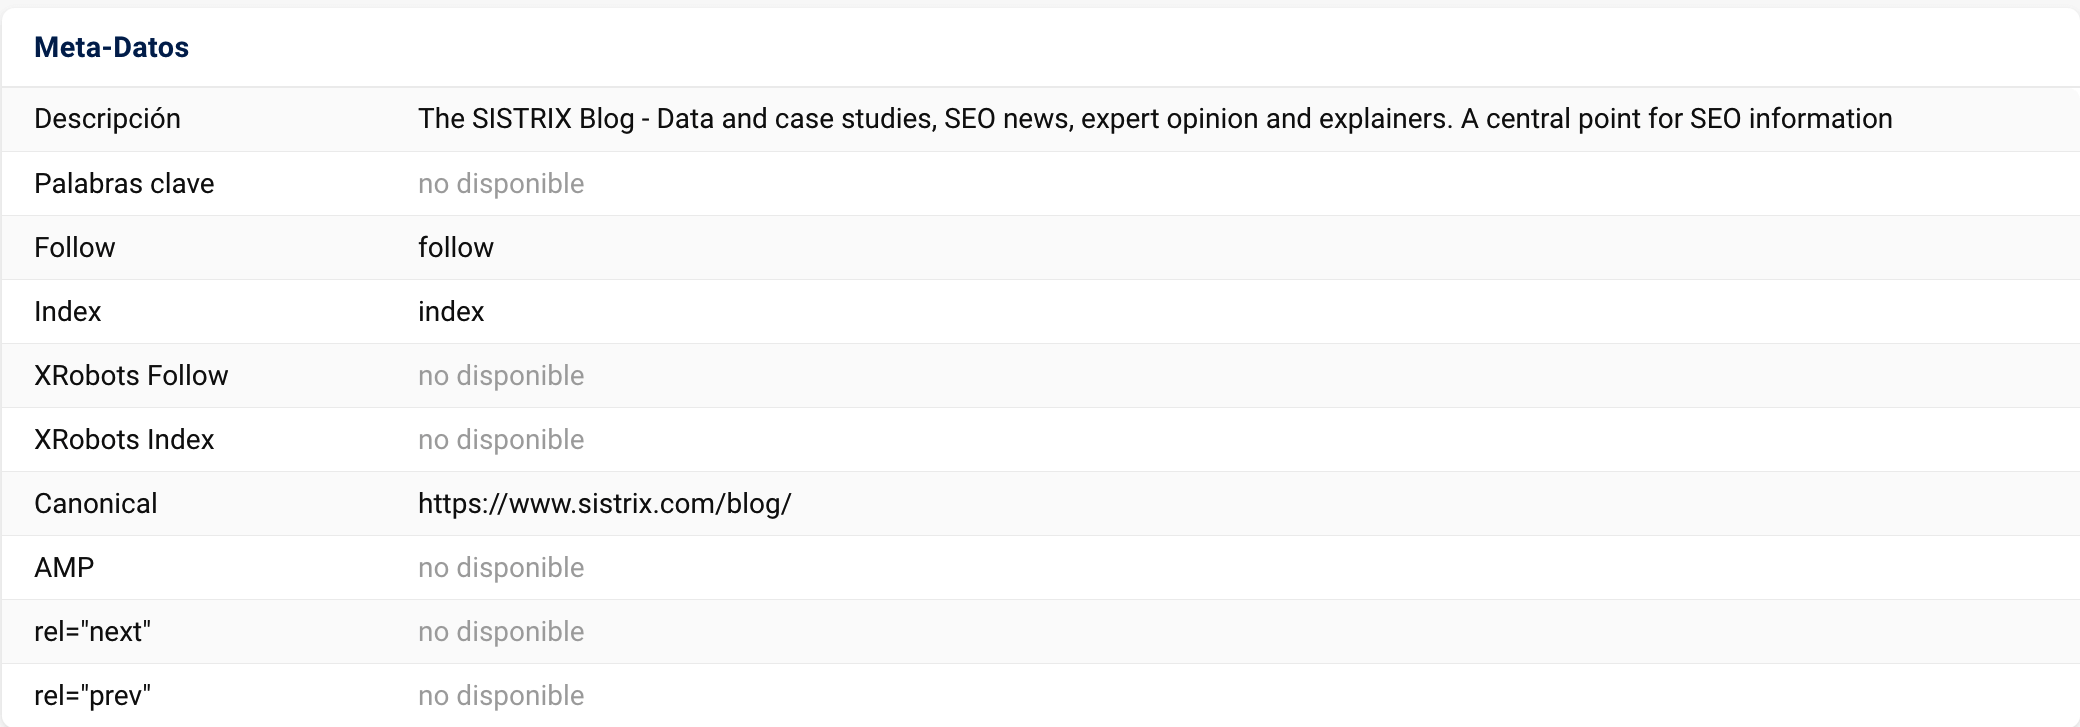 Apartado Resumen de la función "URL Explorer" mostrando Meta-Datos "https://www.sistrix.com/blog/"